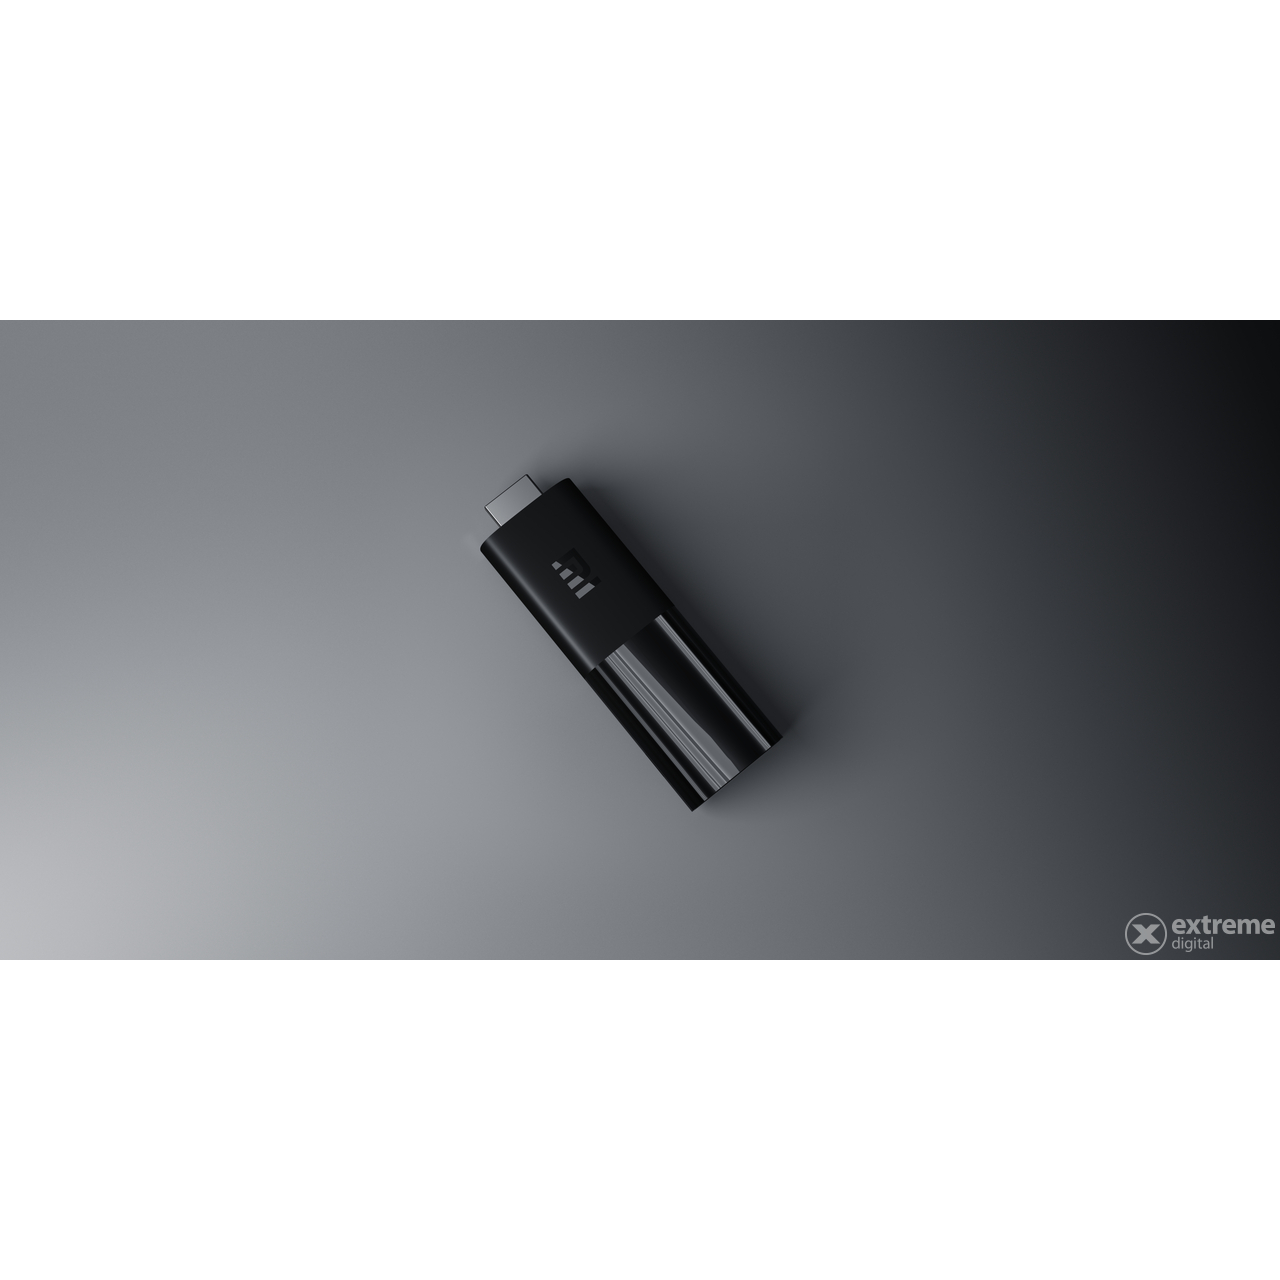 Xiaomi Mi TV Stick Android Smart set-top box (PFJ4098EU)